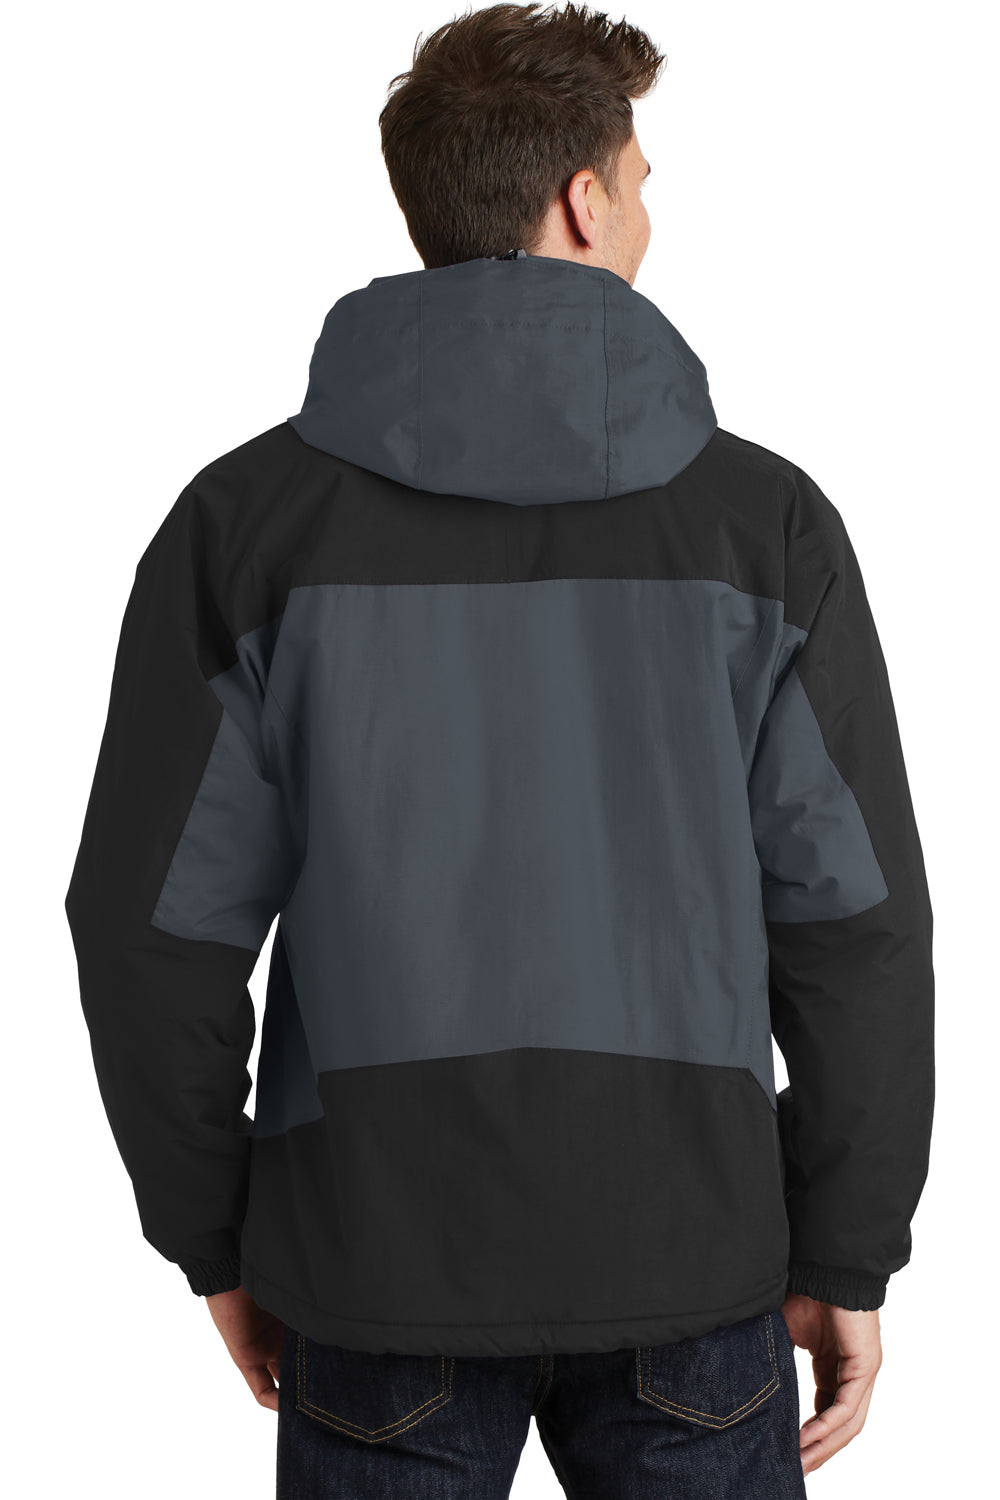 Port Authority J792 Mens Nootka Waterproof Full Zip Hooded Jacket Graphite Grey/Black Back